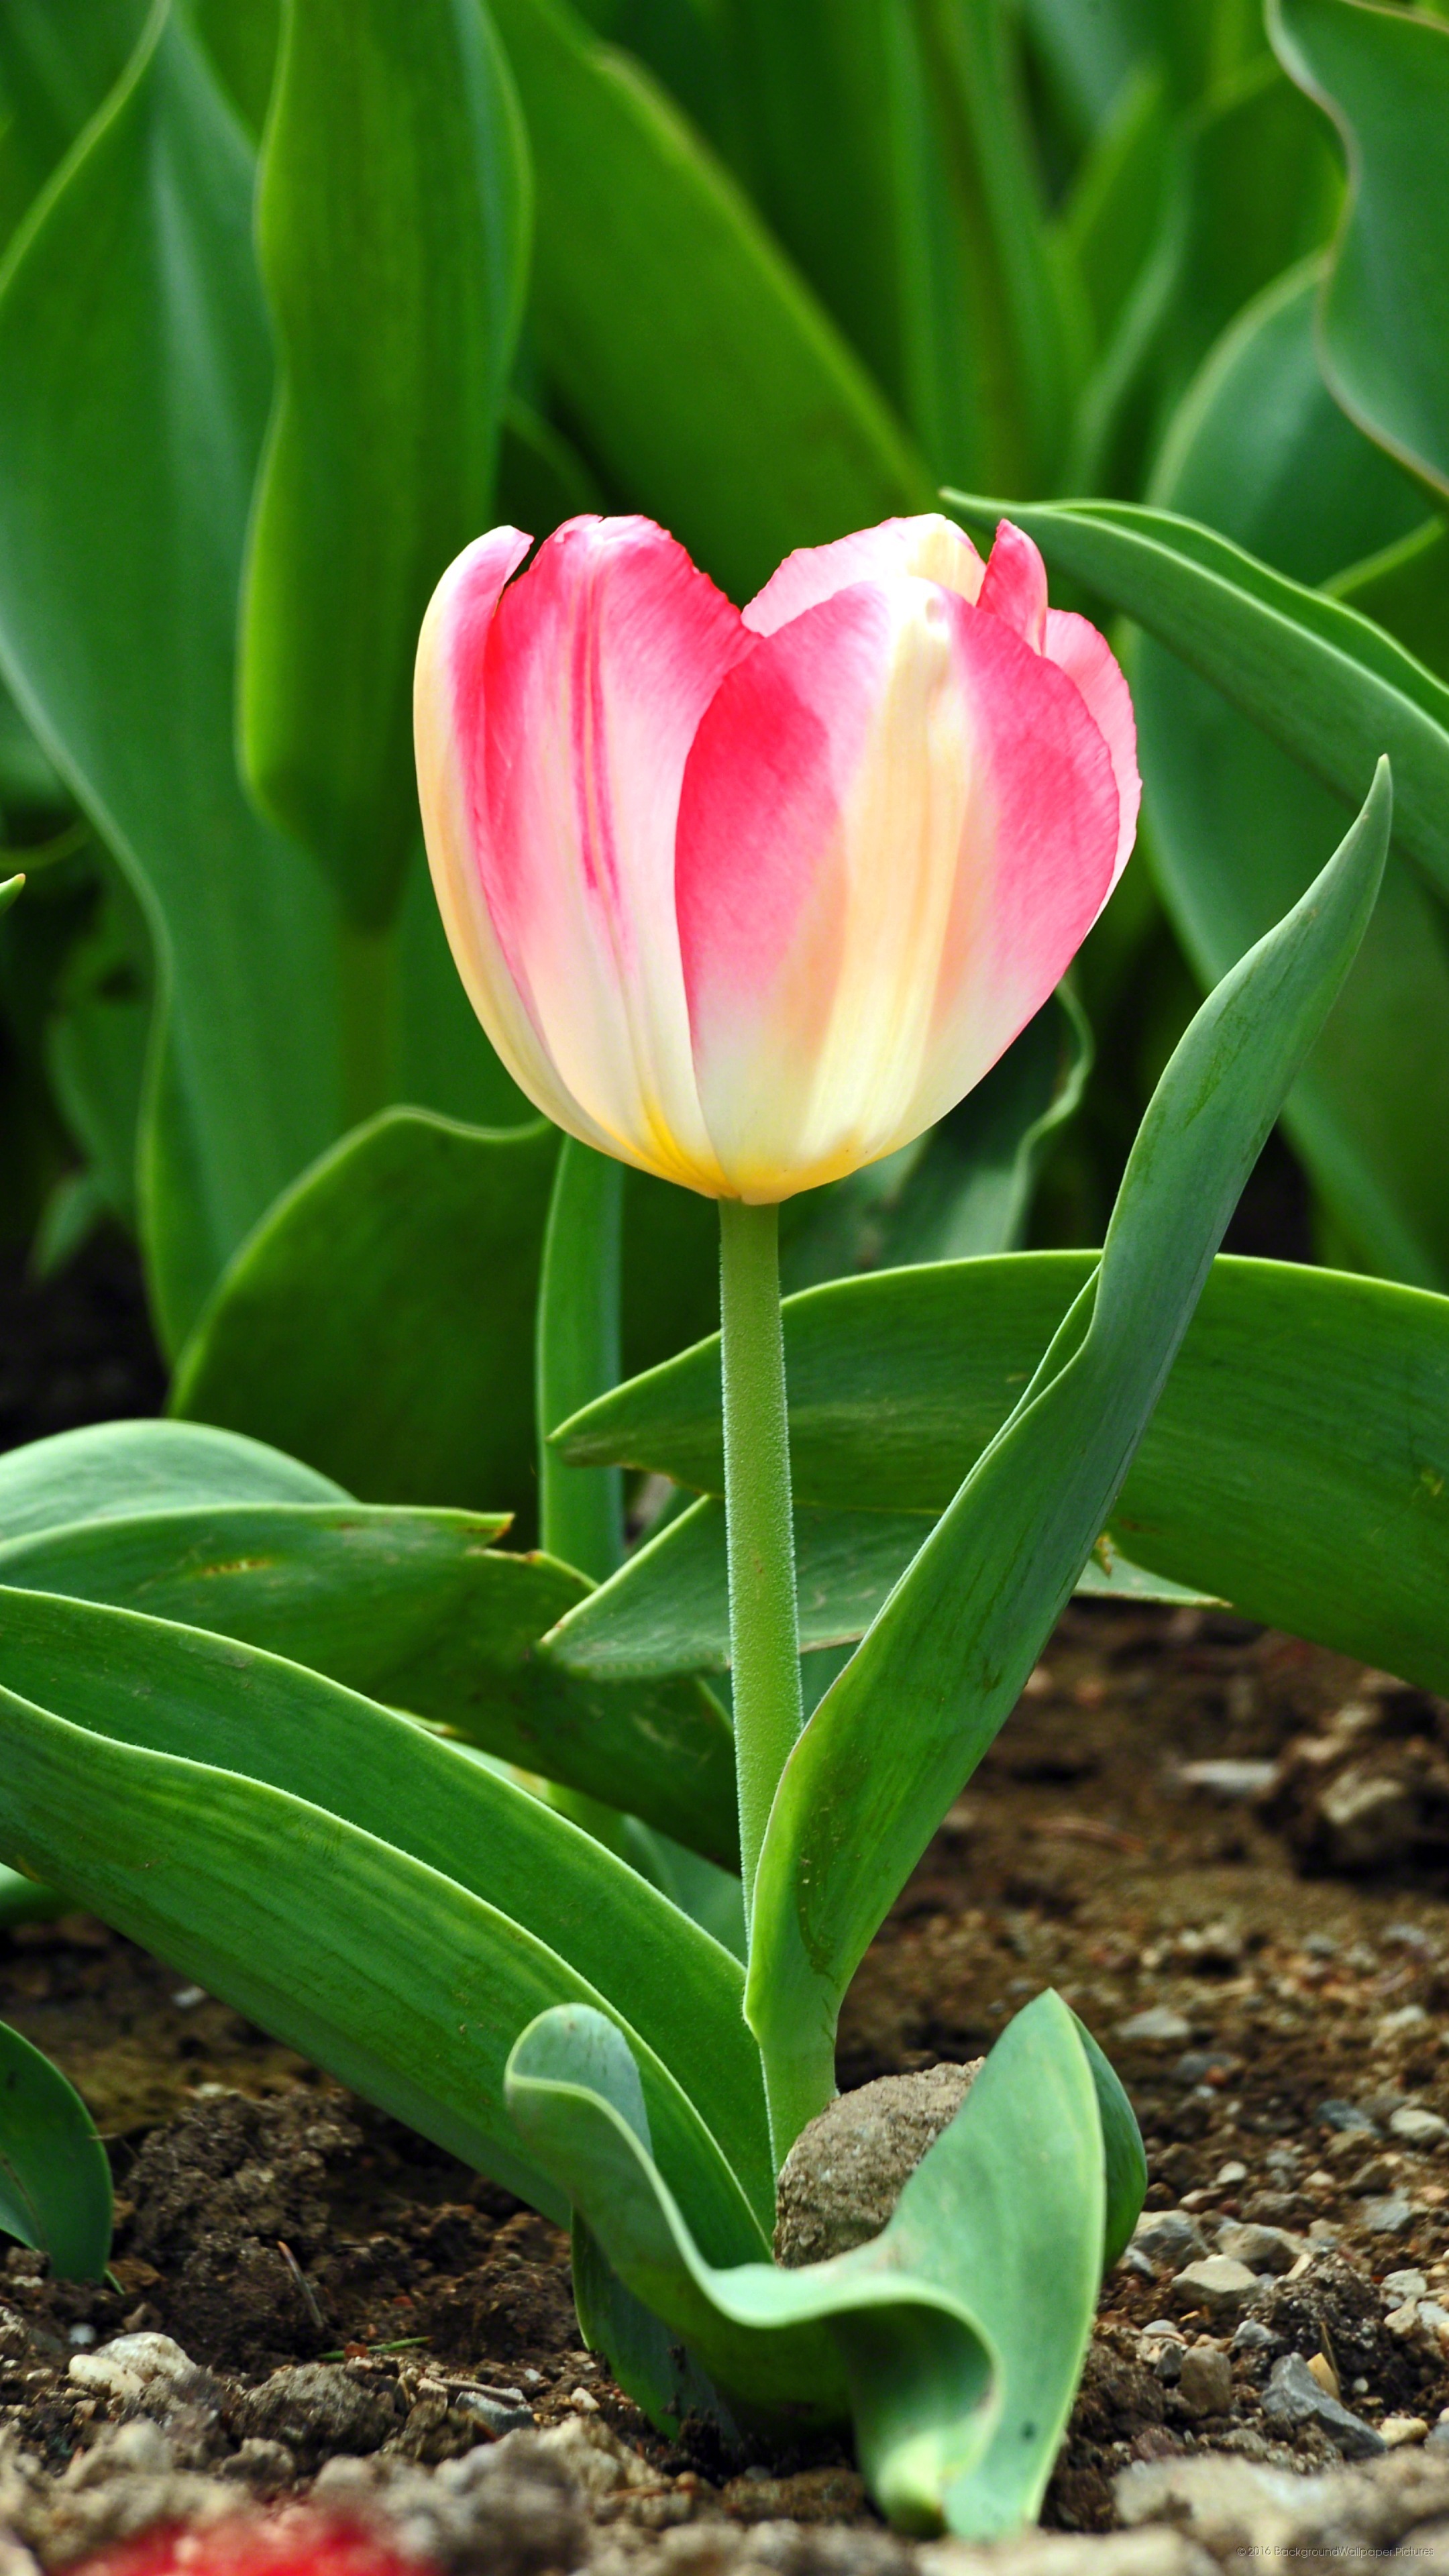 lyf mobile wallpaper hd,fiore,tulipano,pianta fiorita,tulipa humilis,pianta